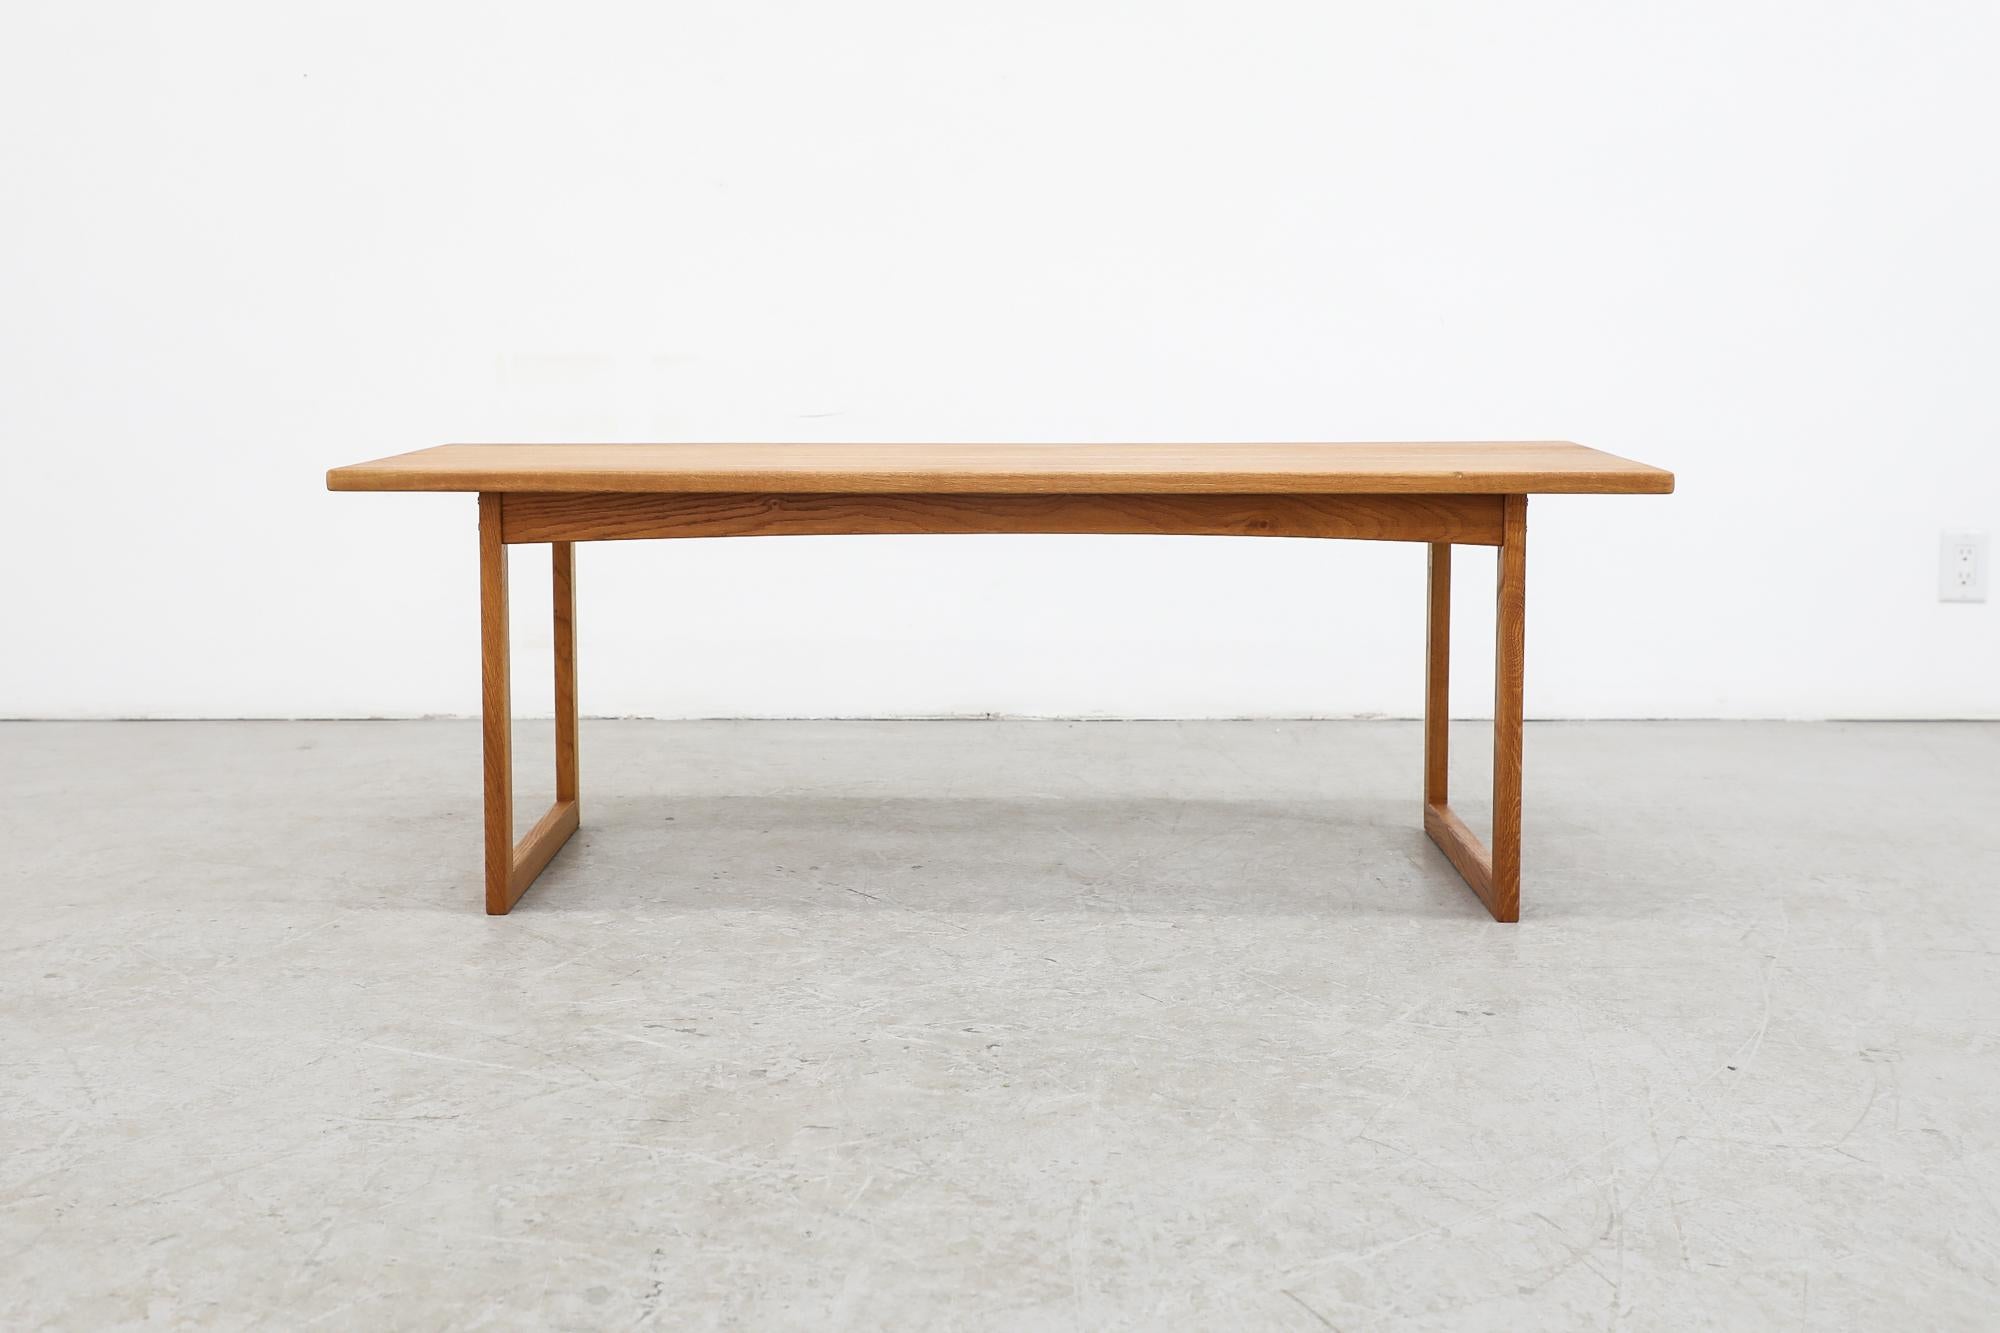 Table basse en chêne de style Kurt Østervig du milieu du siècle, avec un cadre carré simple et des pieds en forme de U. En état d'origine, avec quelques décolorations sur le plateau de la table, correspondant à son âge et à son utilisation.